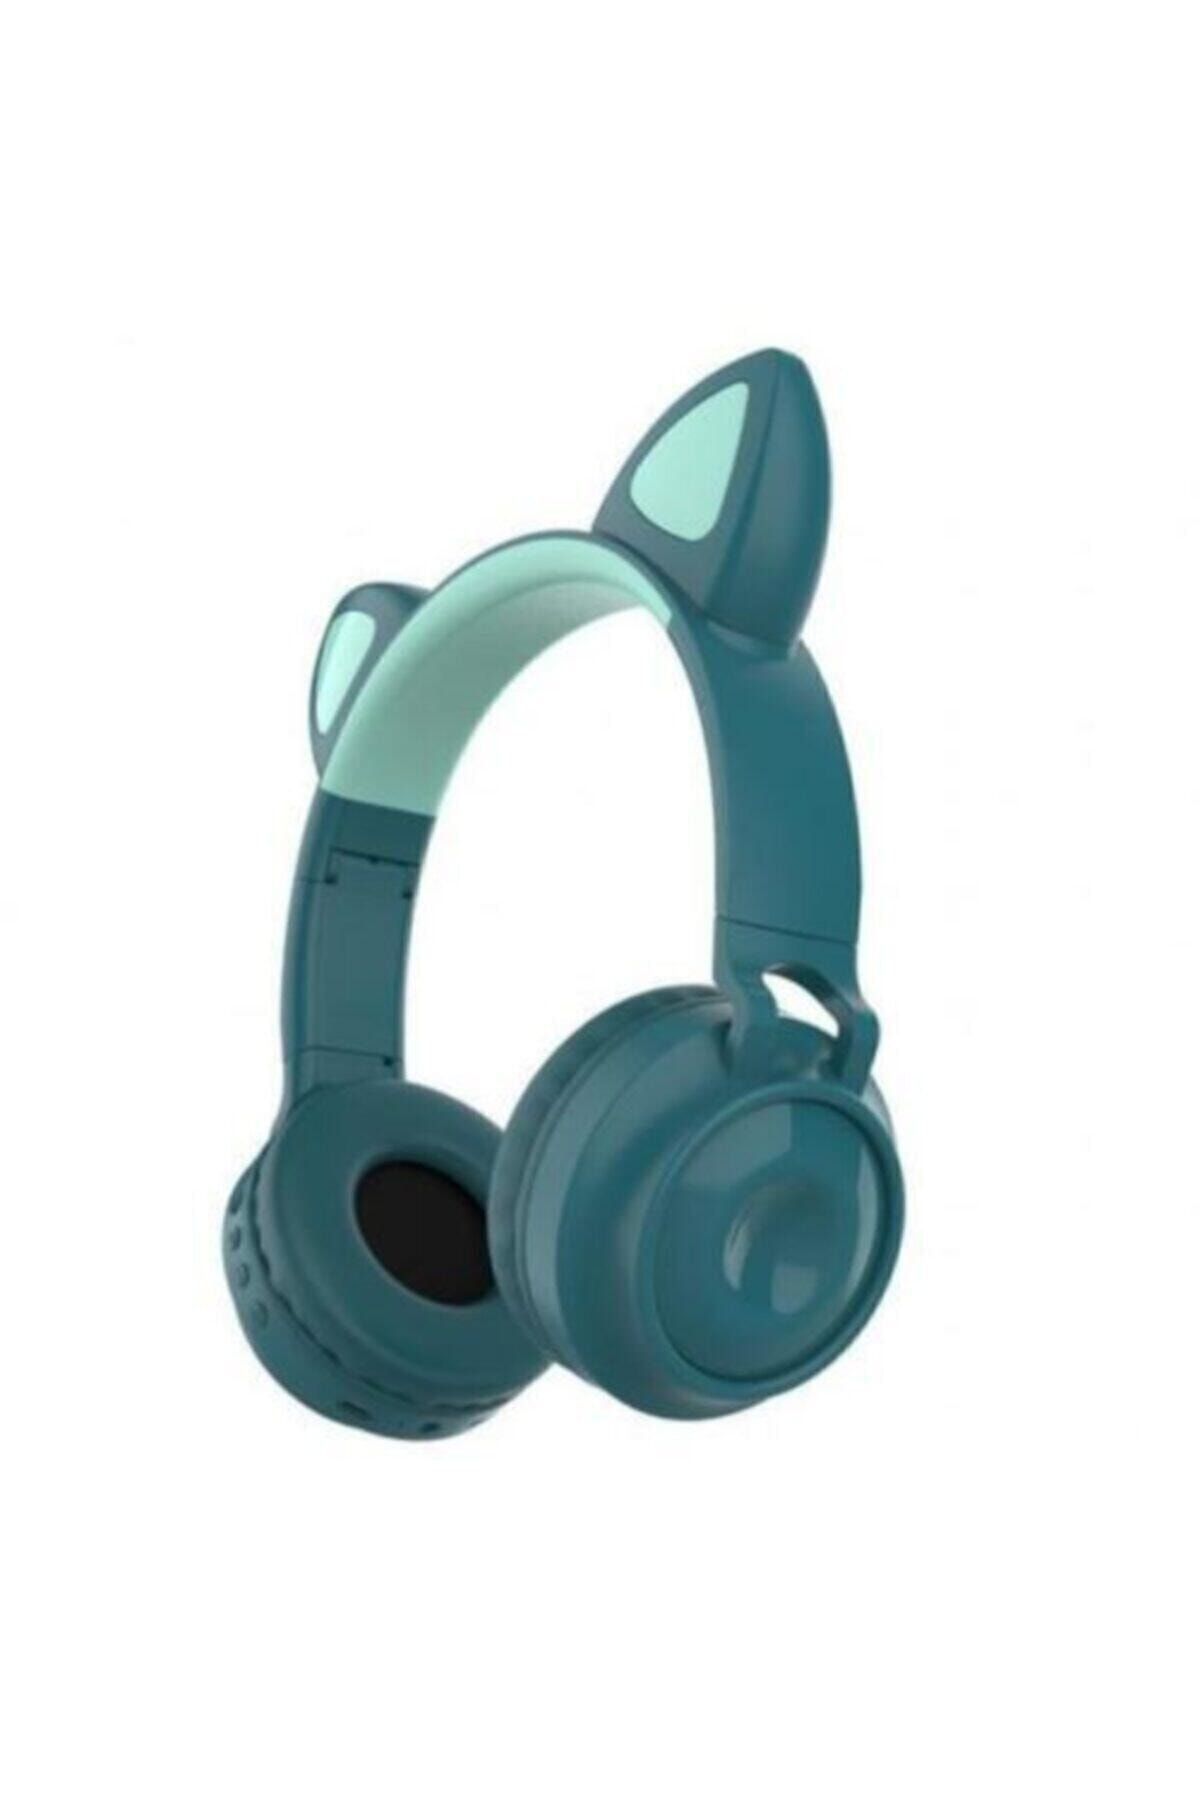 teknosepetim Led Işıklı Kedi Kulak Bluetooth 5.0 Wireless Kulaklık Kedi Kulak Bej Blt-19 Süpriz Hediyeli